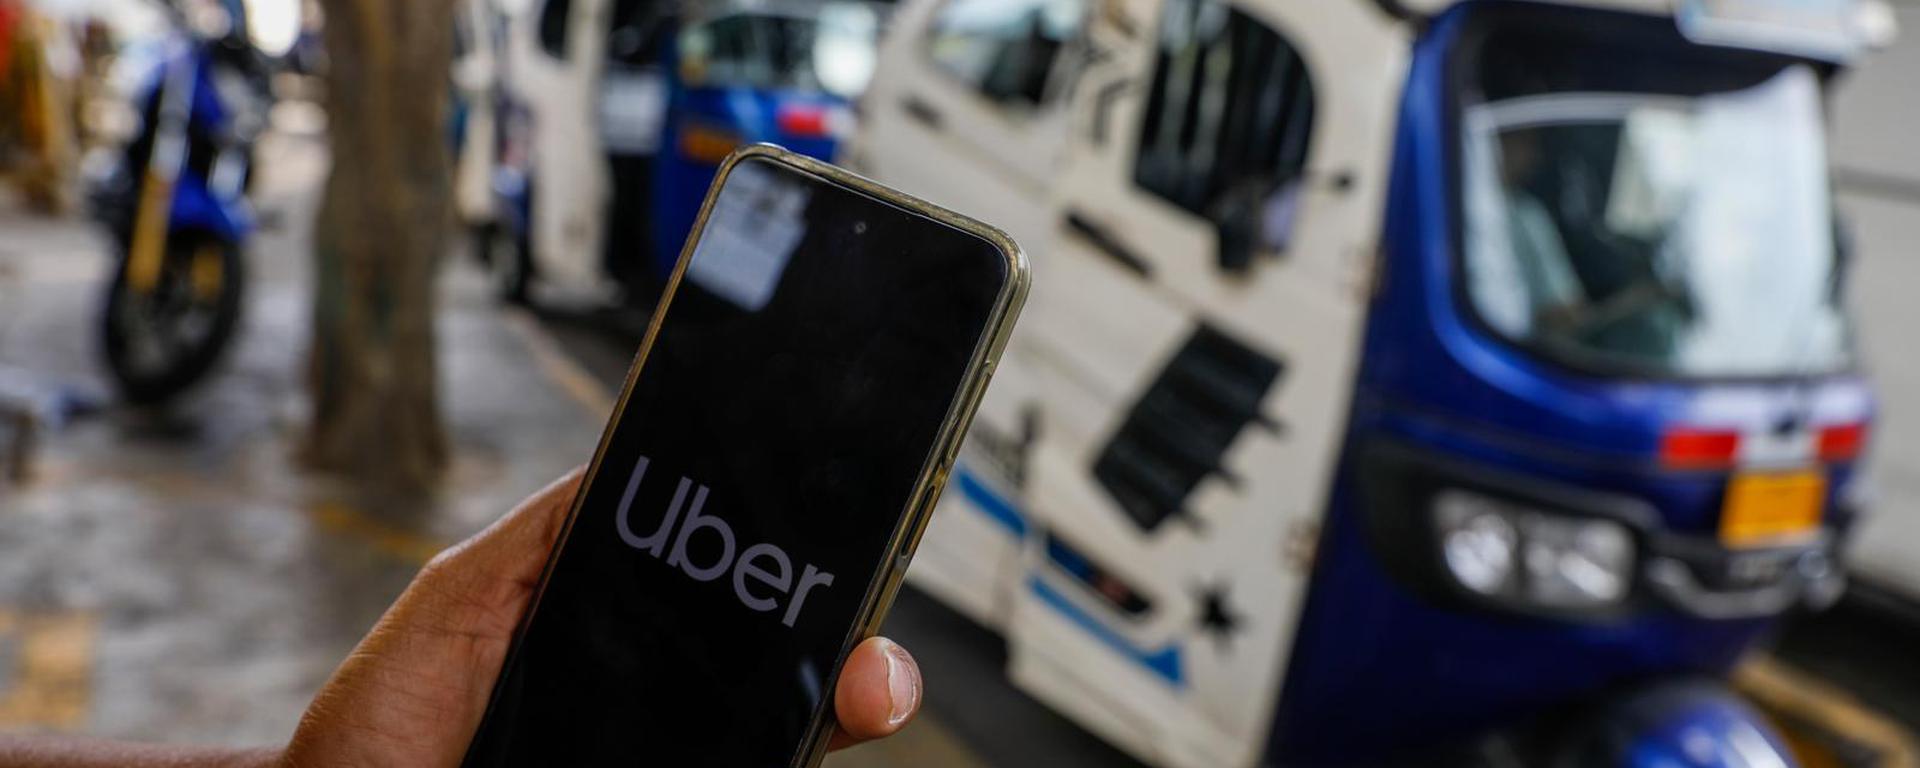 Uber lanza servicio de mototaxis en Lima: entre un modo de transporte que busca ser más seguro y el riesgo del caos en las pistas | UberTuk